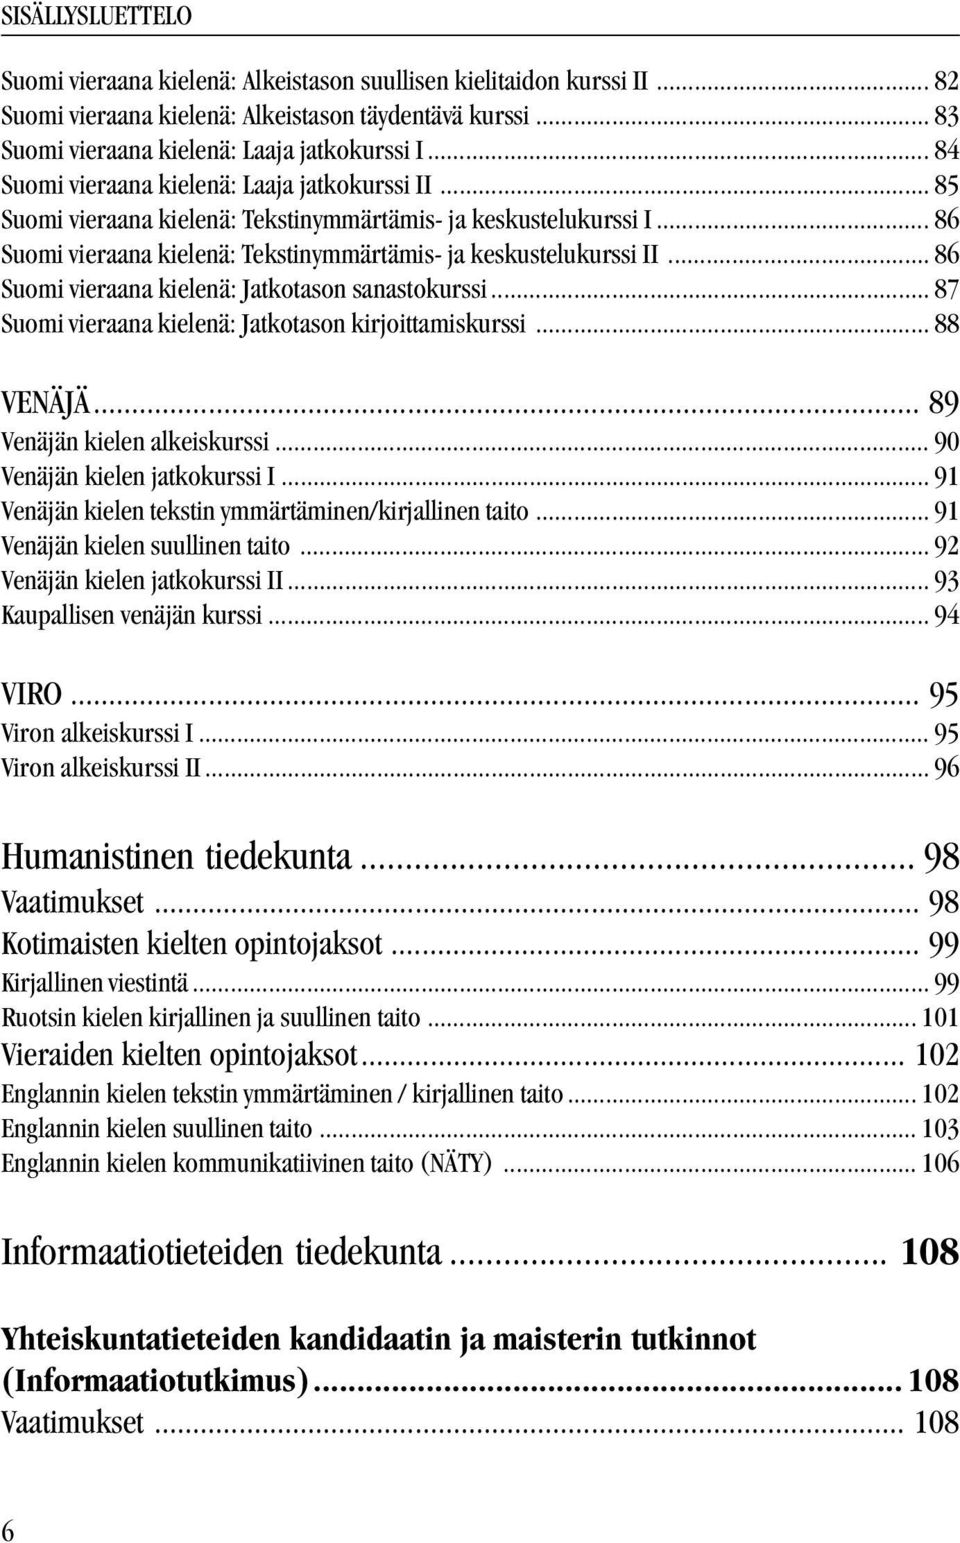 .. 86 Suomi vieraana kielenä: Jatkotason sanastokurssi... 87 Suomi vieraana kielenä: Jatkotason kirjoittamiskurssi... 88 VENÄJÄ... 89 Venäjän kielen alkeiskurssi... 90 Venäjän kielen jatkokurssi I.